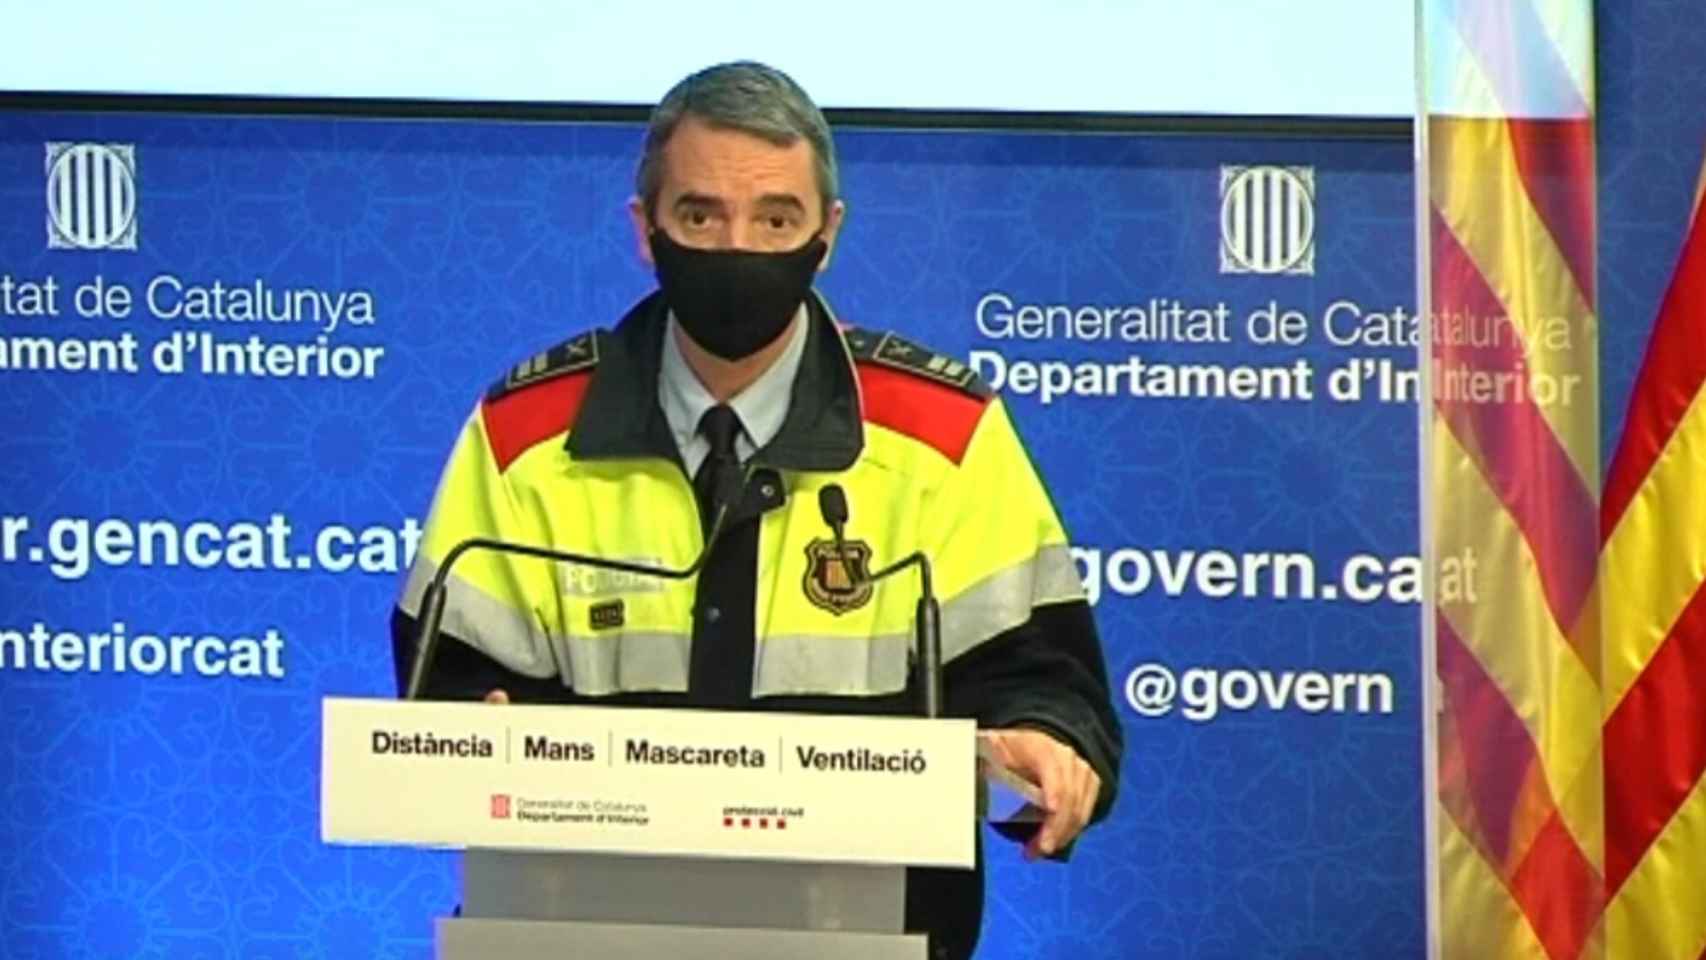 El comisario de los Mossos d'Esquadra Joan Carles molinero detalla el balance de delitos en Cataluña el primer año de pandemia / 324